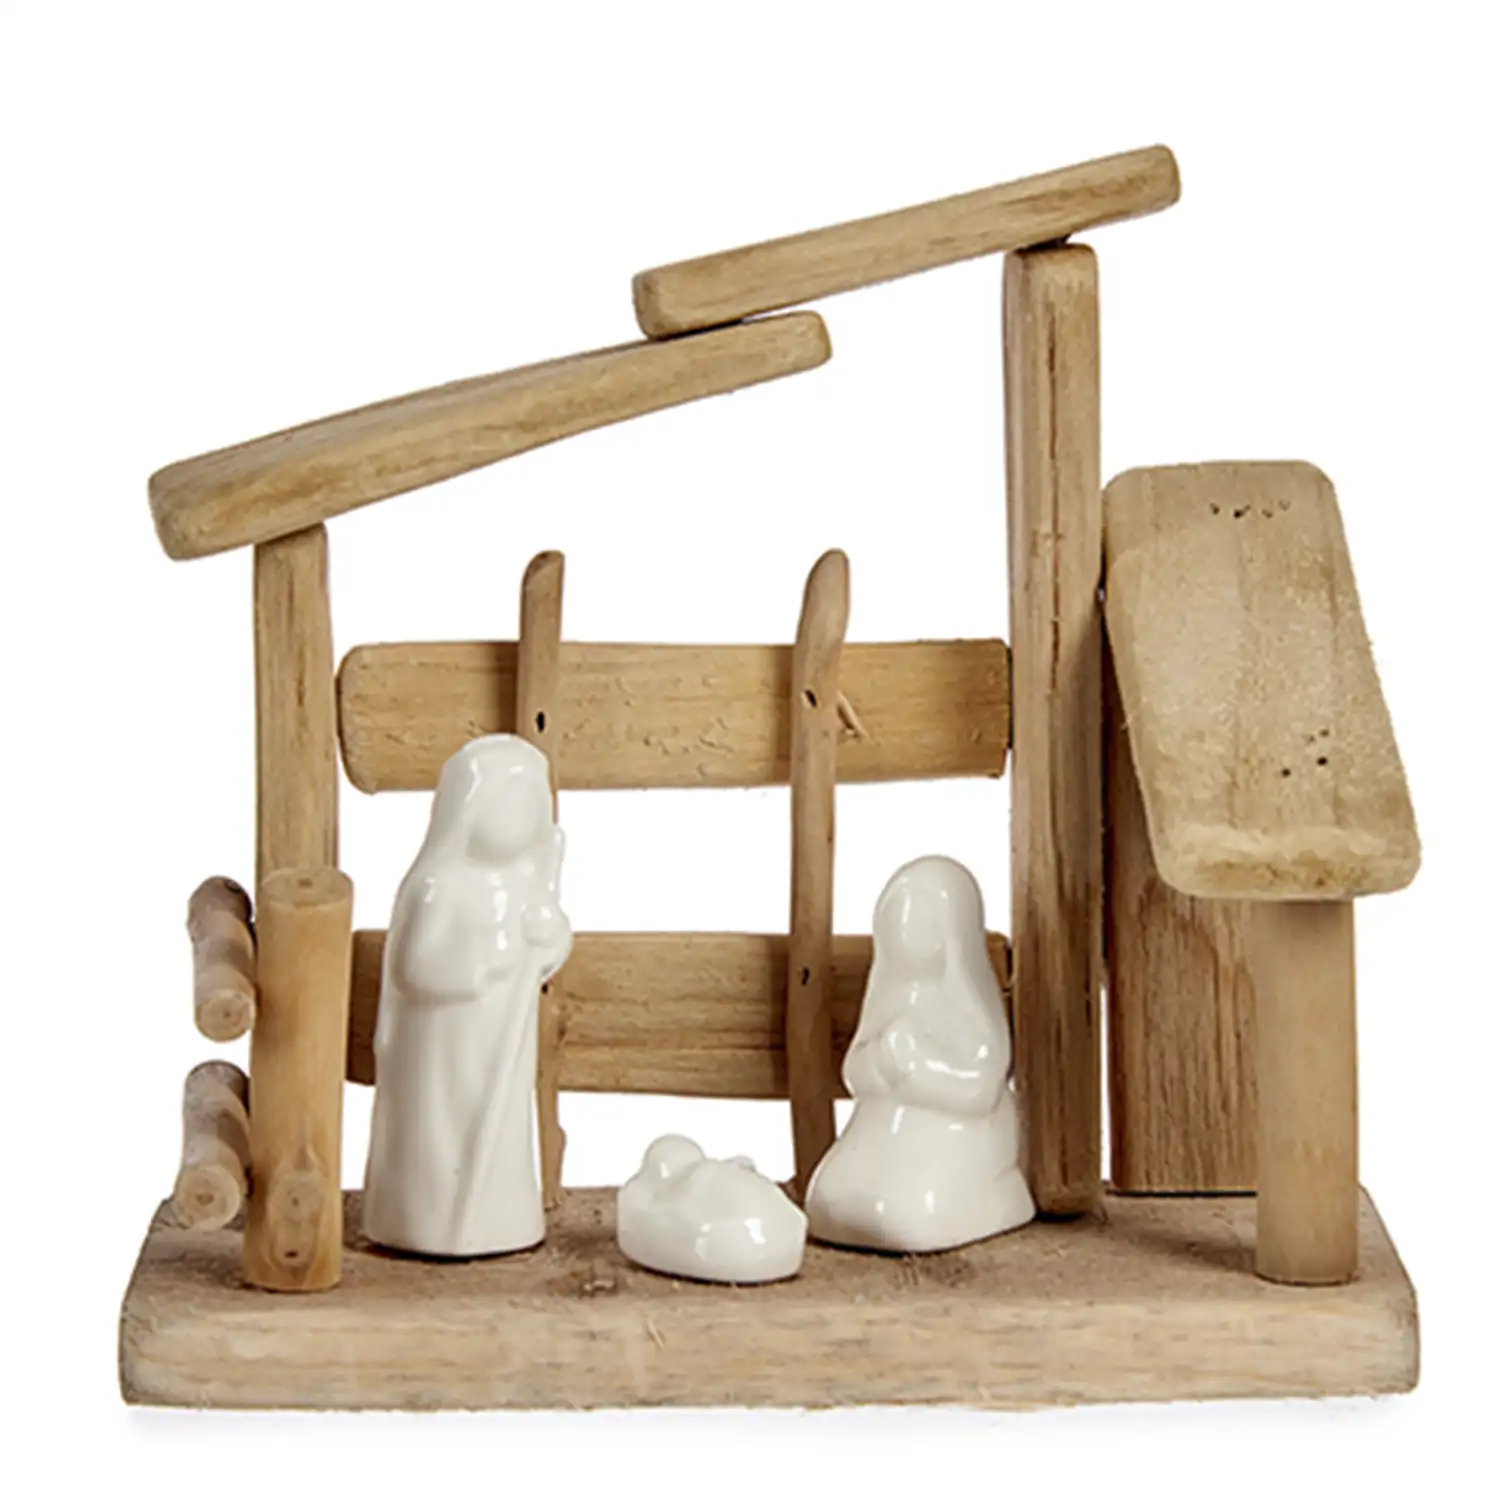 Nacimento de madera con 3 figuritas.